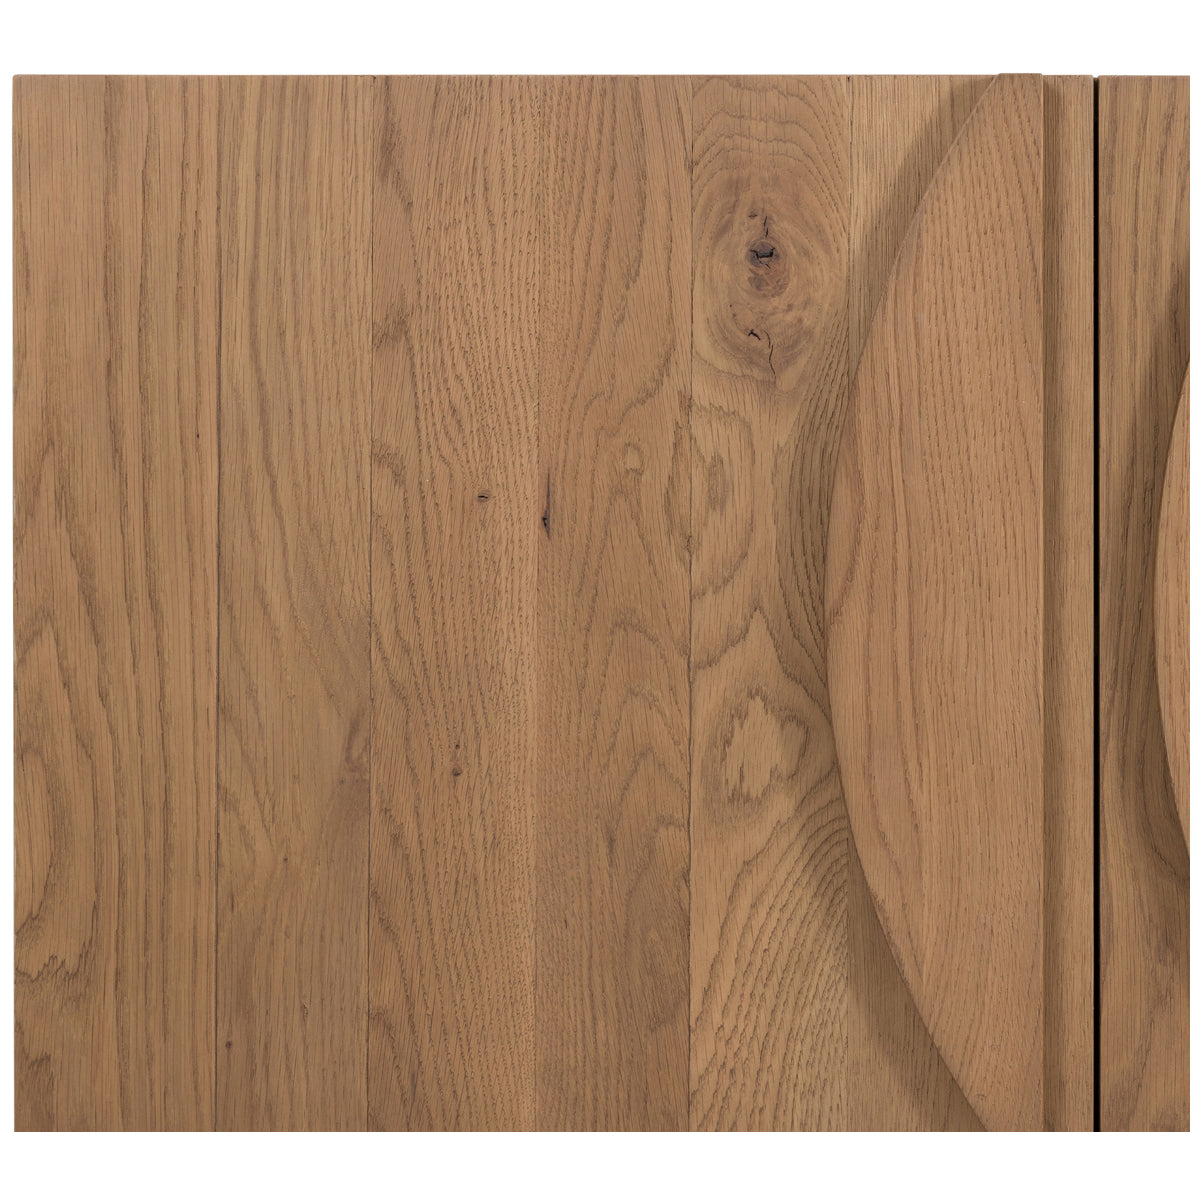 Four Hands Barton Pickford Sideboard - Dusted Oak Veneer